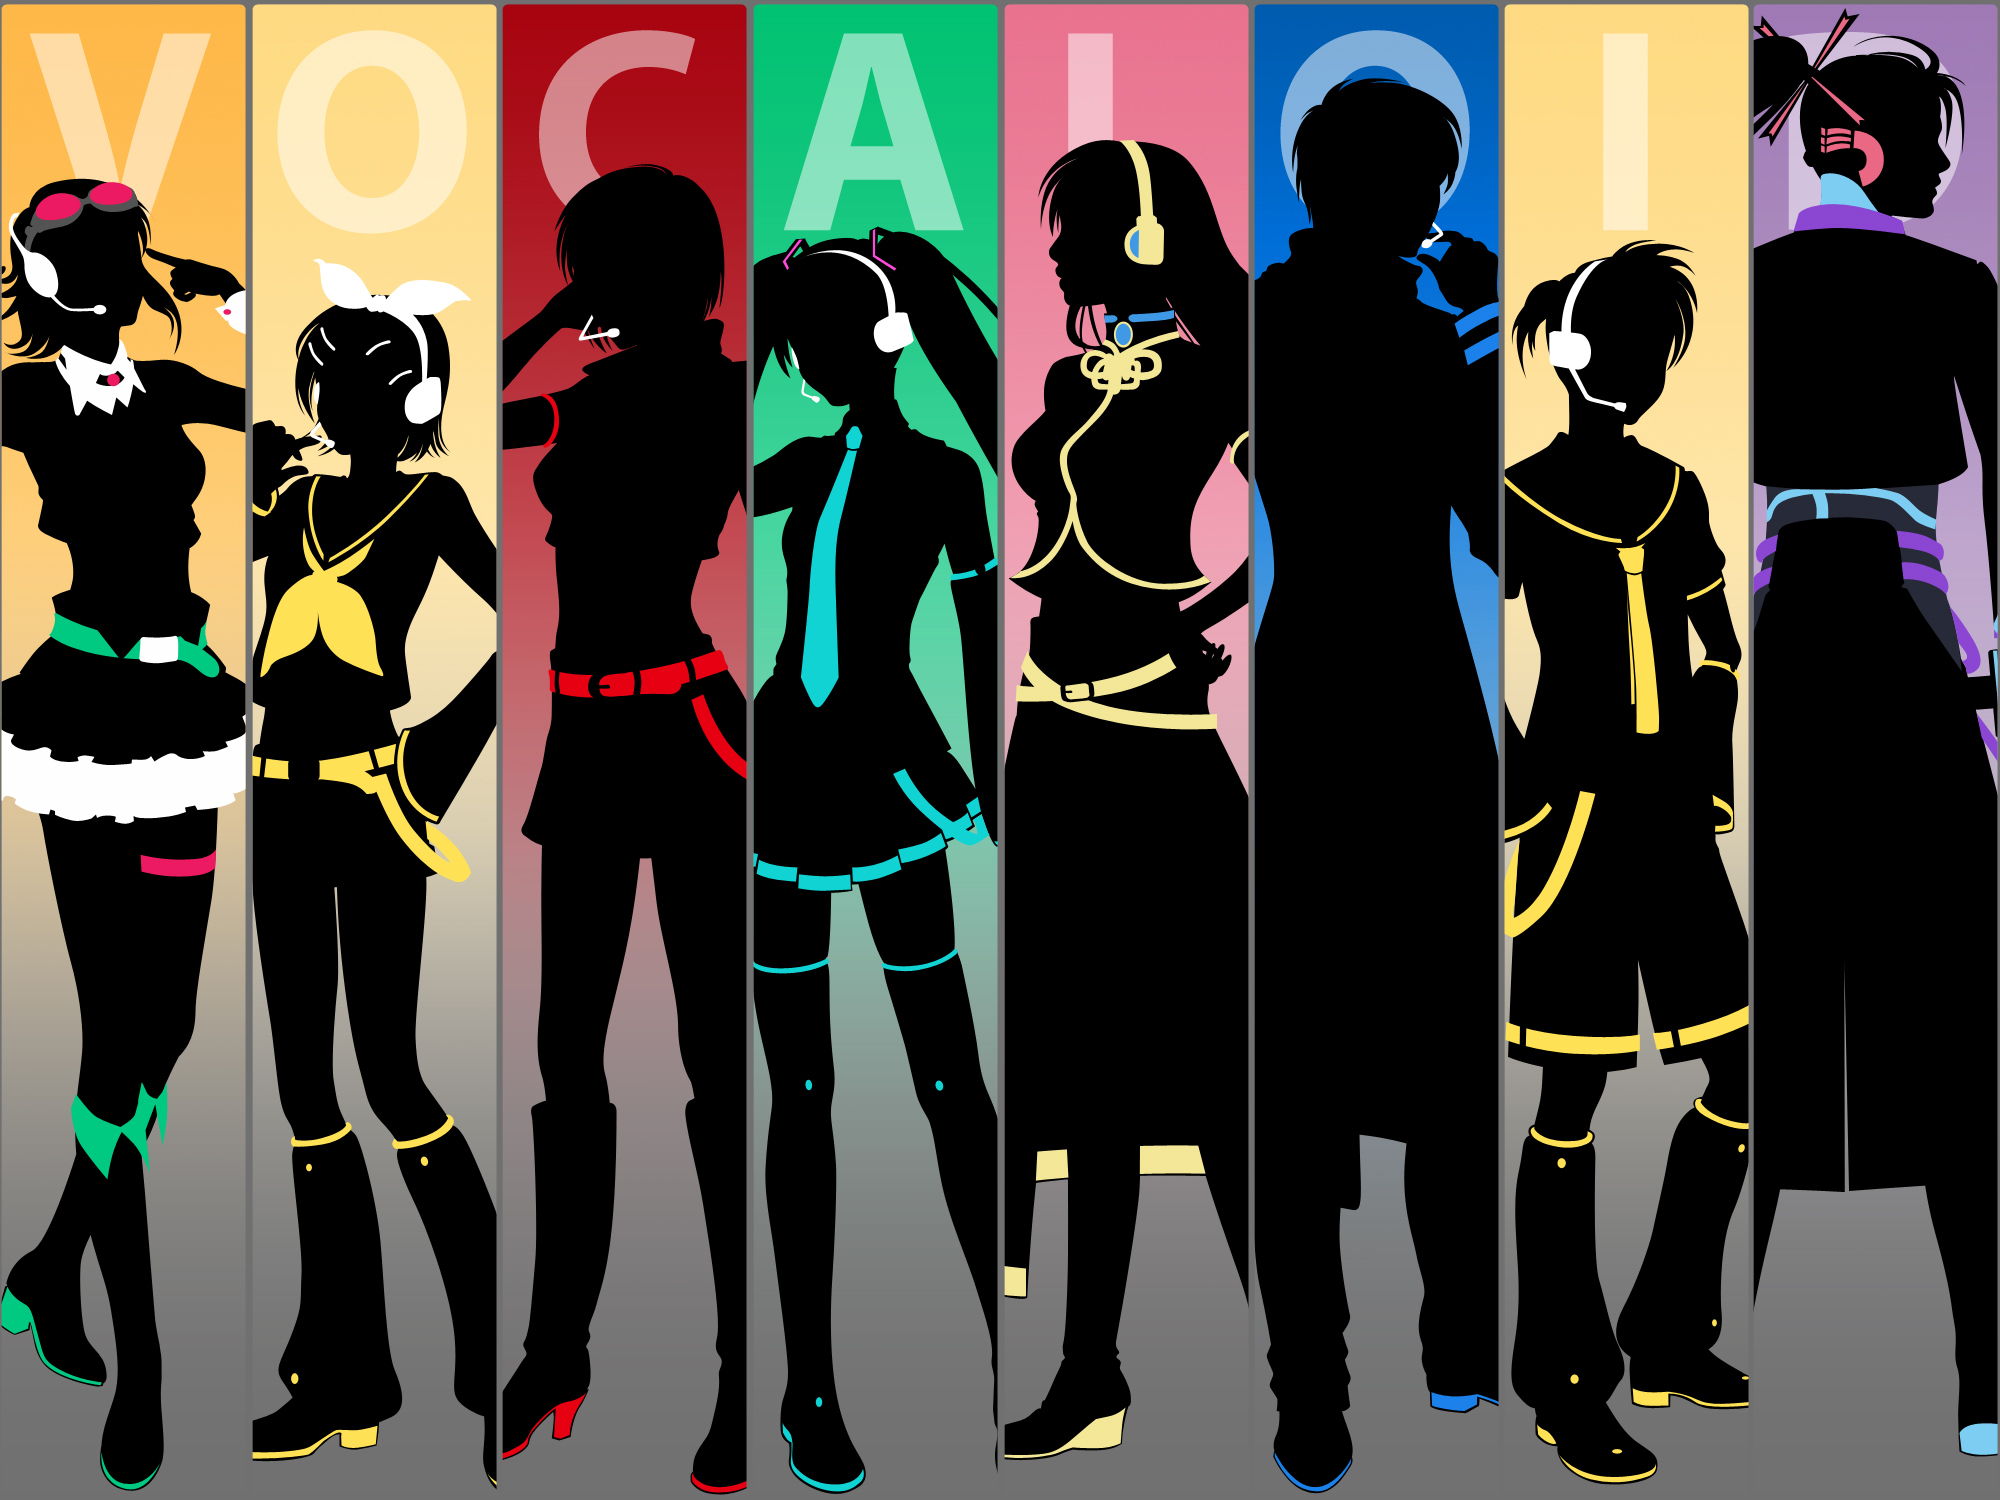 Free download wallpaper Anime, Vocaloid, Hatsune Miku, Luka Megurine, Rin Kagamine, Gumi (Vocaloid), Kaito (Vocaloid), Len Kagamine, Meiko (Vocaloid), Kamui Gakupo on your PC desktop